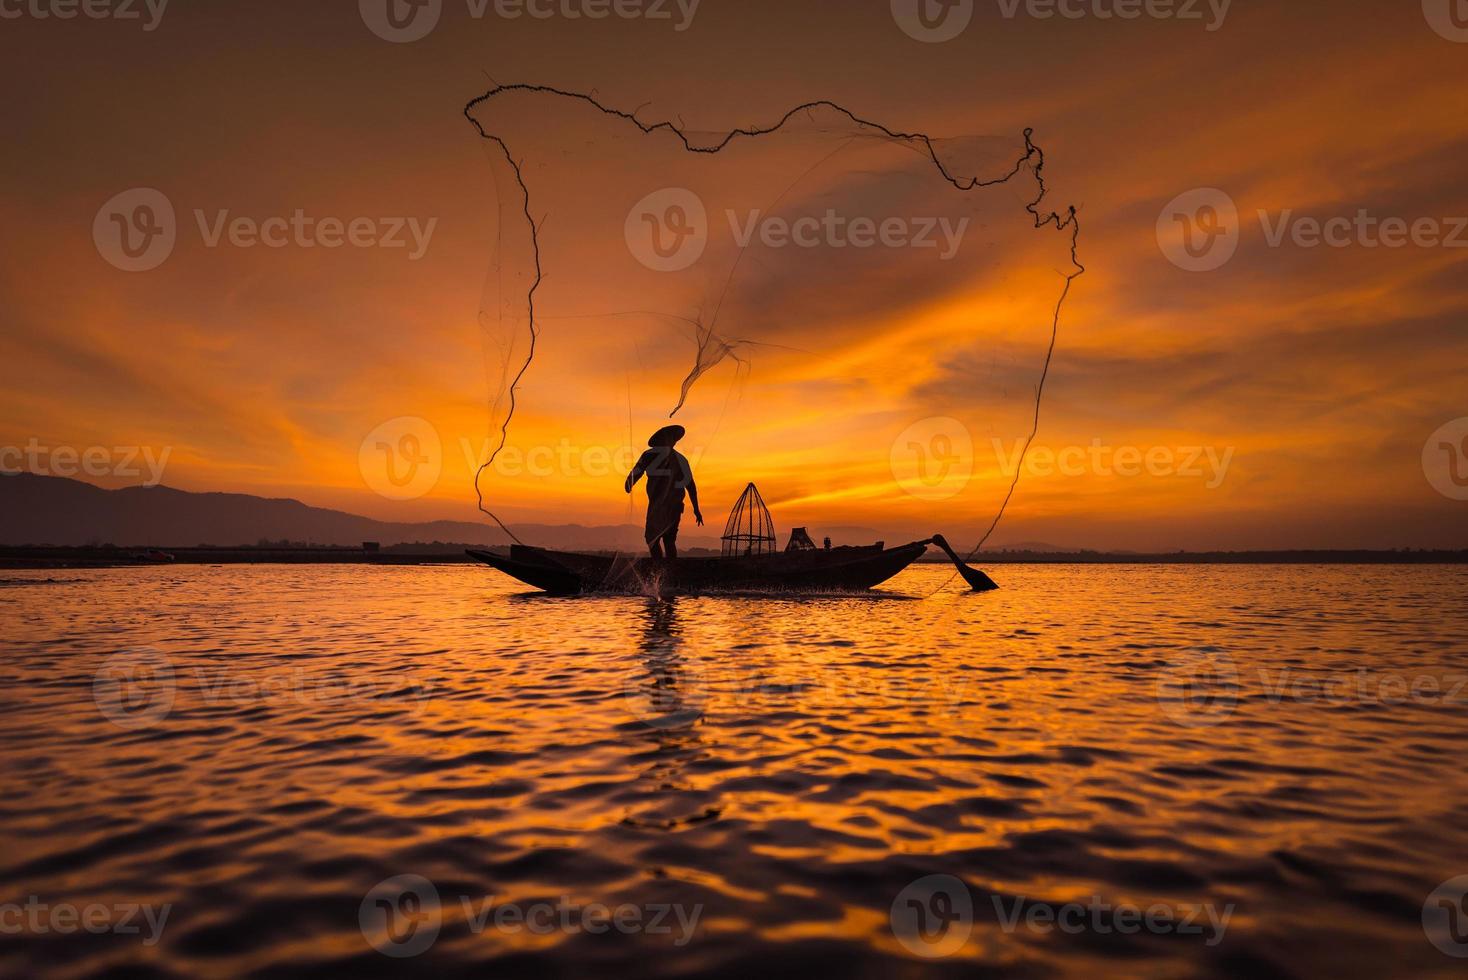 pescatore asiatico su una barca di legno che getta una rete per catturare pesci d'acqua dolce nel fiume naturale al mattino presto prima dell'alba foto